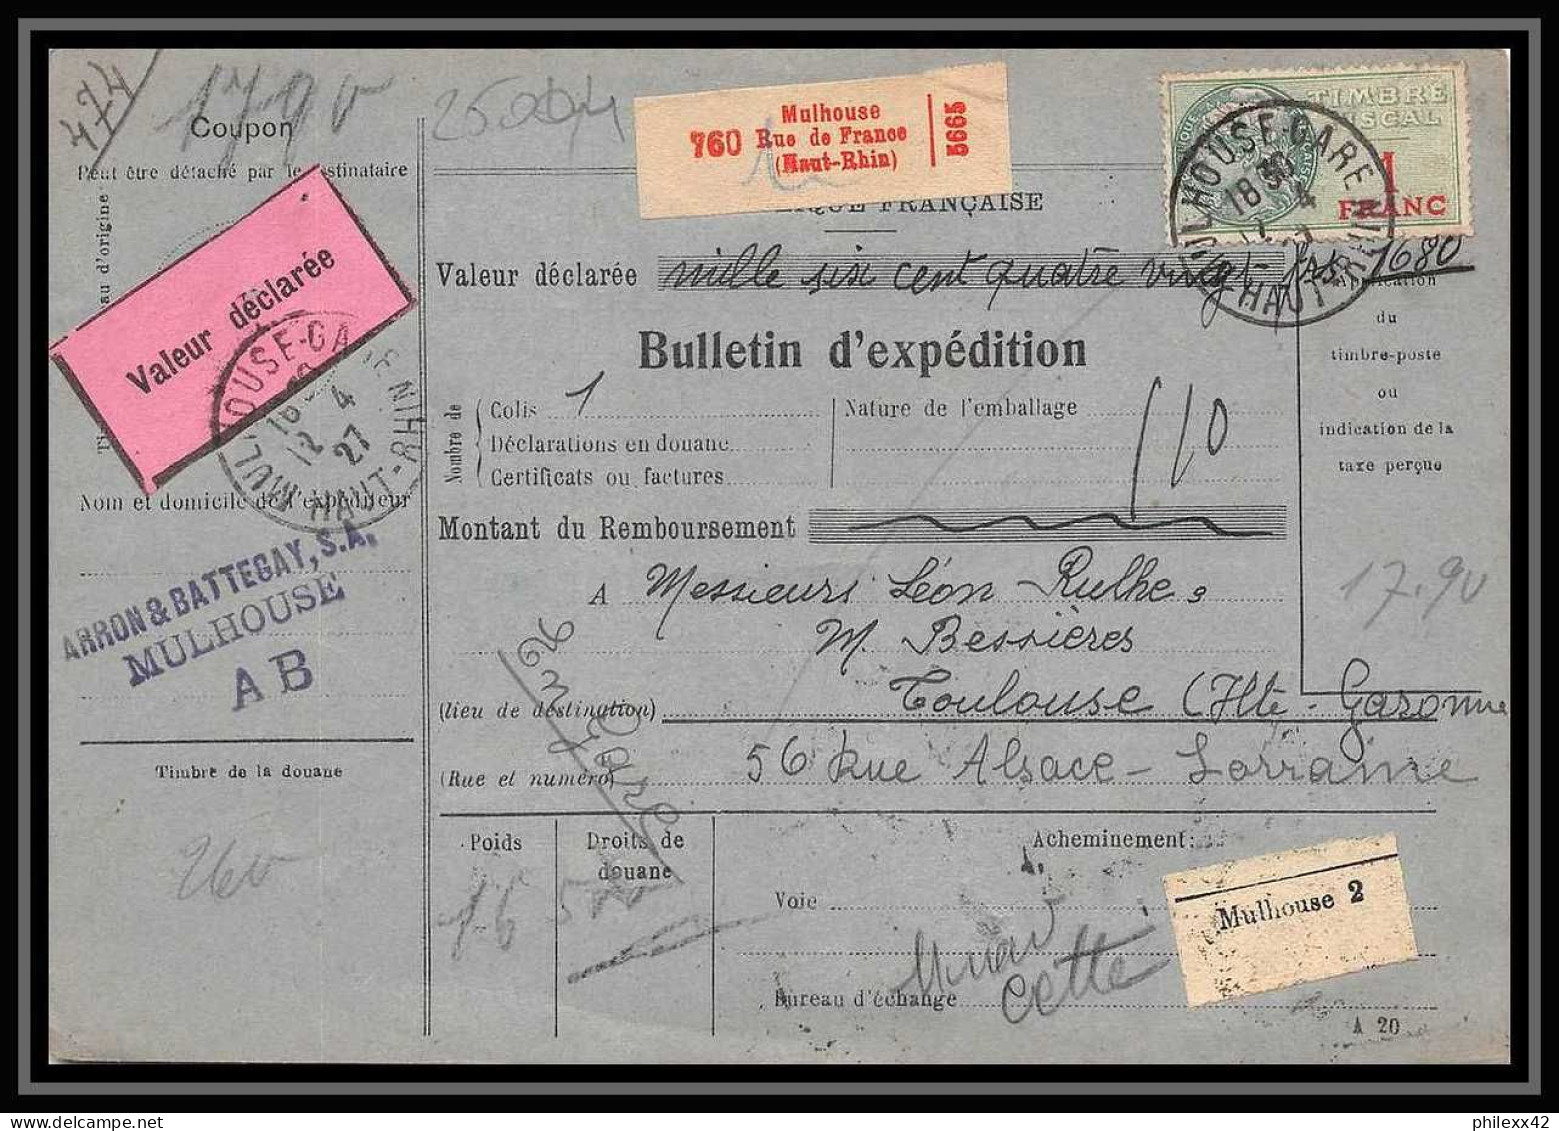 25004 Bulletin D'expédition France Colis Postaux Fiscal Haut Rhin - 1927 Mulhouse Merson 123+207 Valeur Déclarée - Covers & Documents